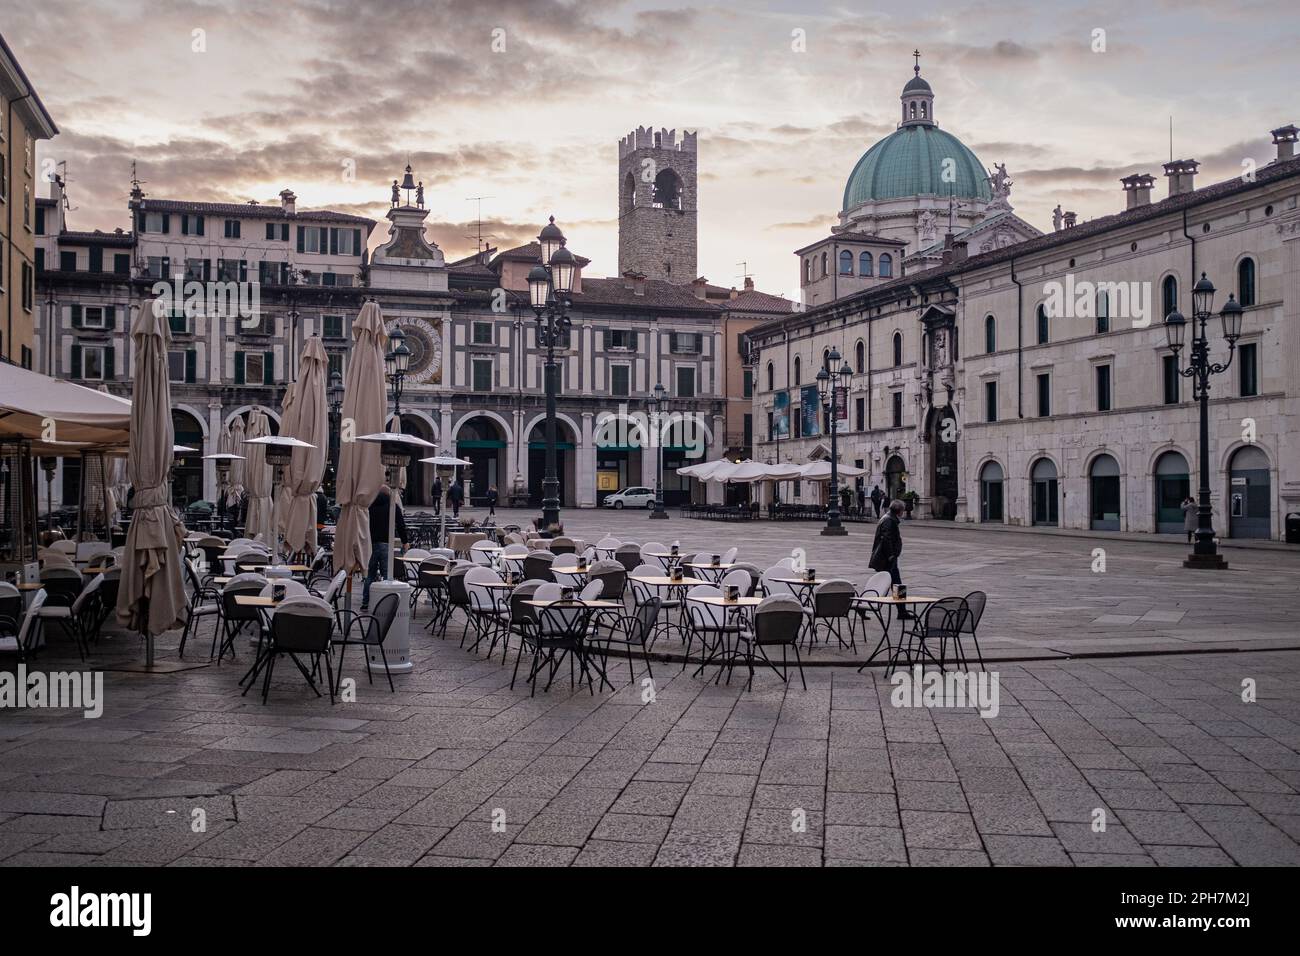 Una veduta di Piazza della Loggia a Brescia (Italia) al primo semaforo del mattino. I portici rinascimentali e la torre con l'orologio sullo sfondo. Foto Stock